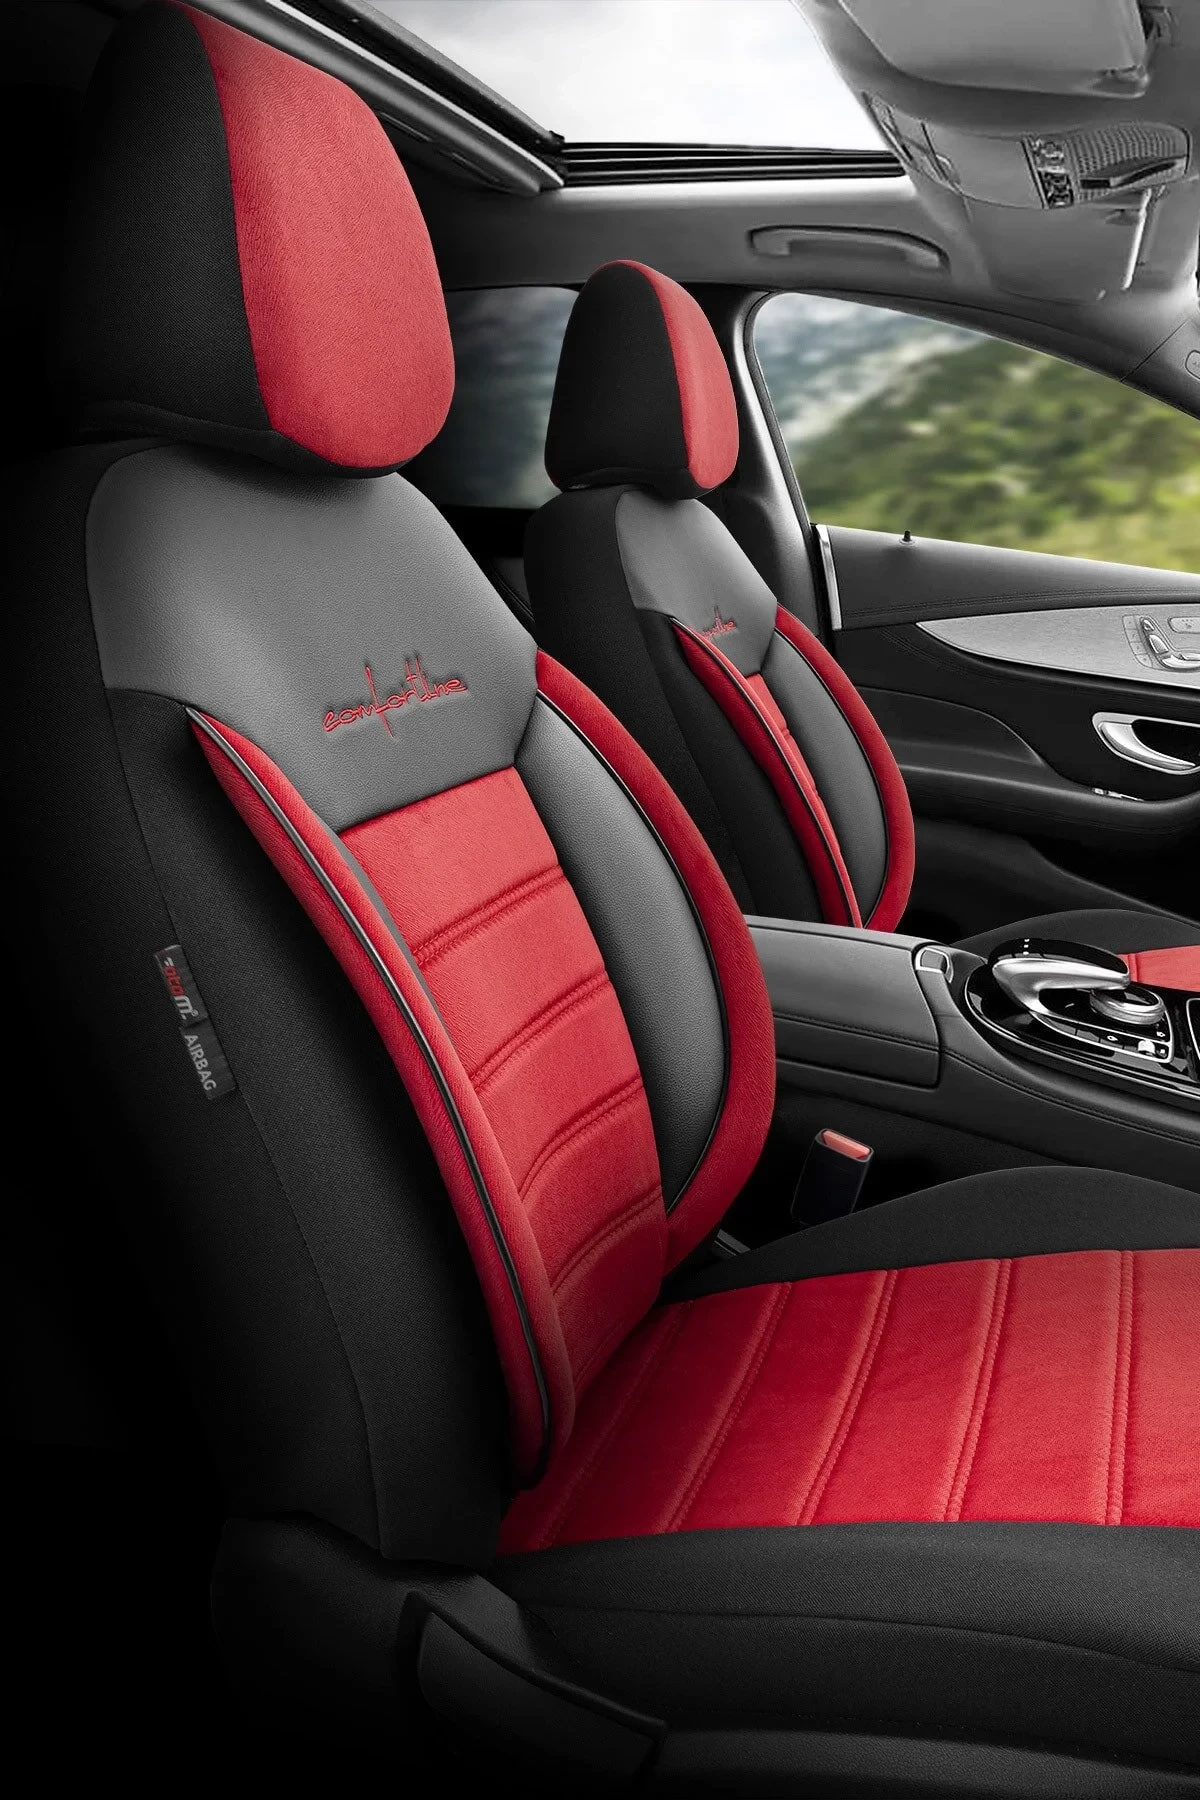  Otom Comfortline Design Premium Oto Koltuk Kılıfı Kırmızı